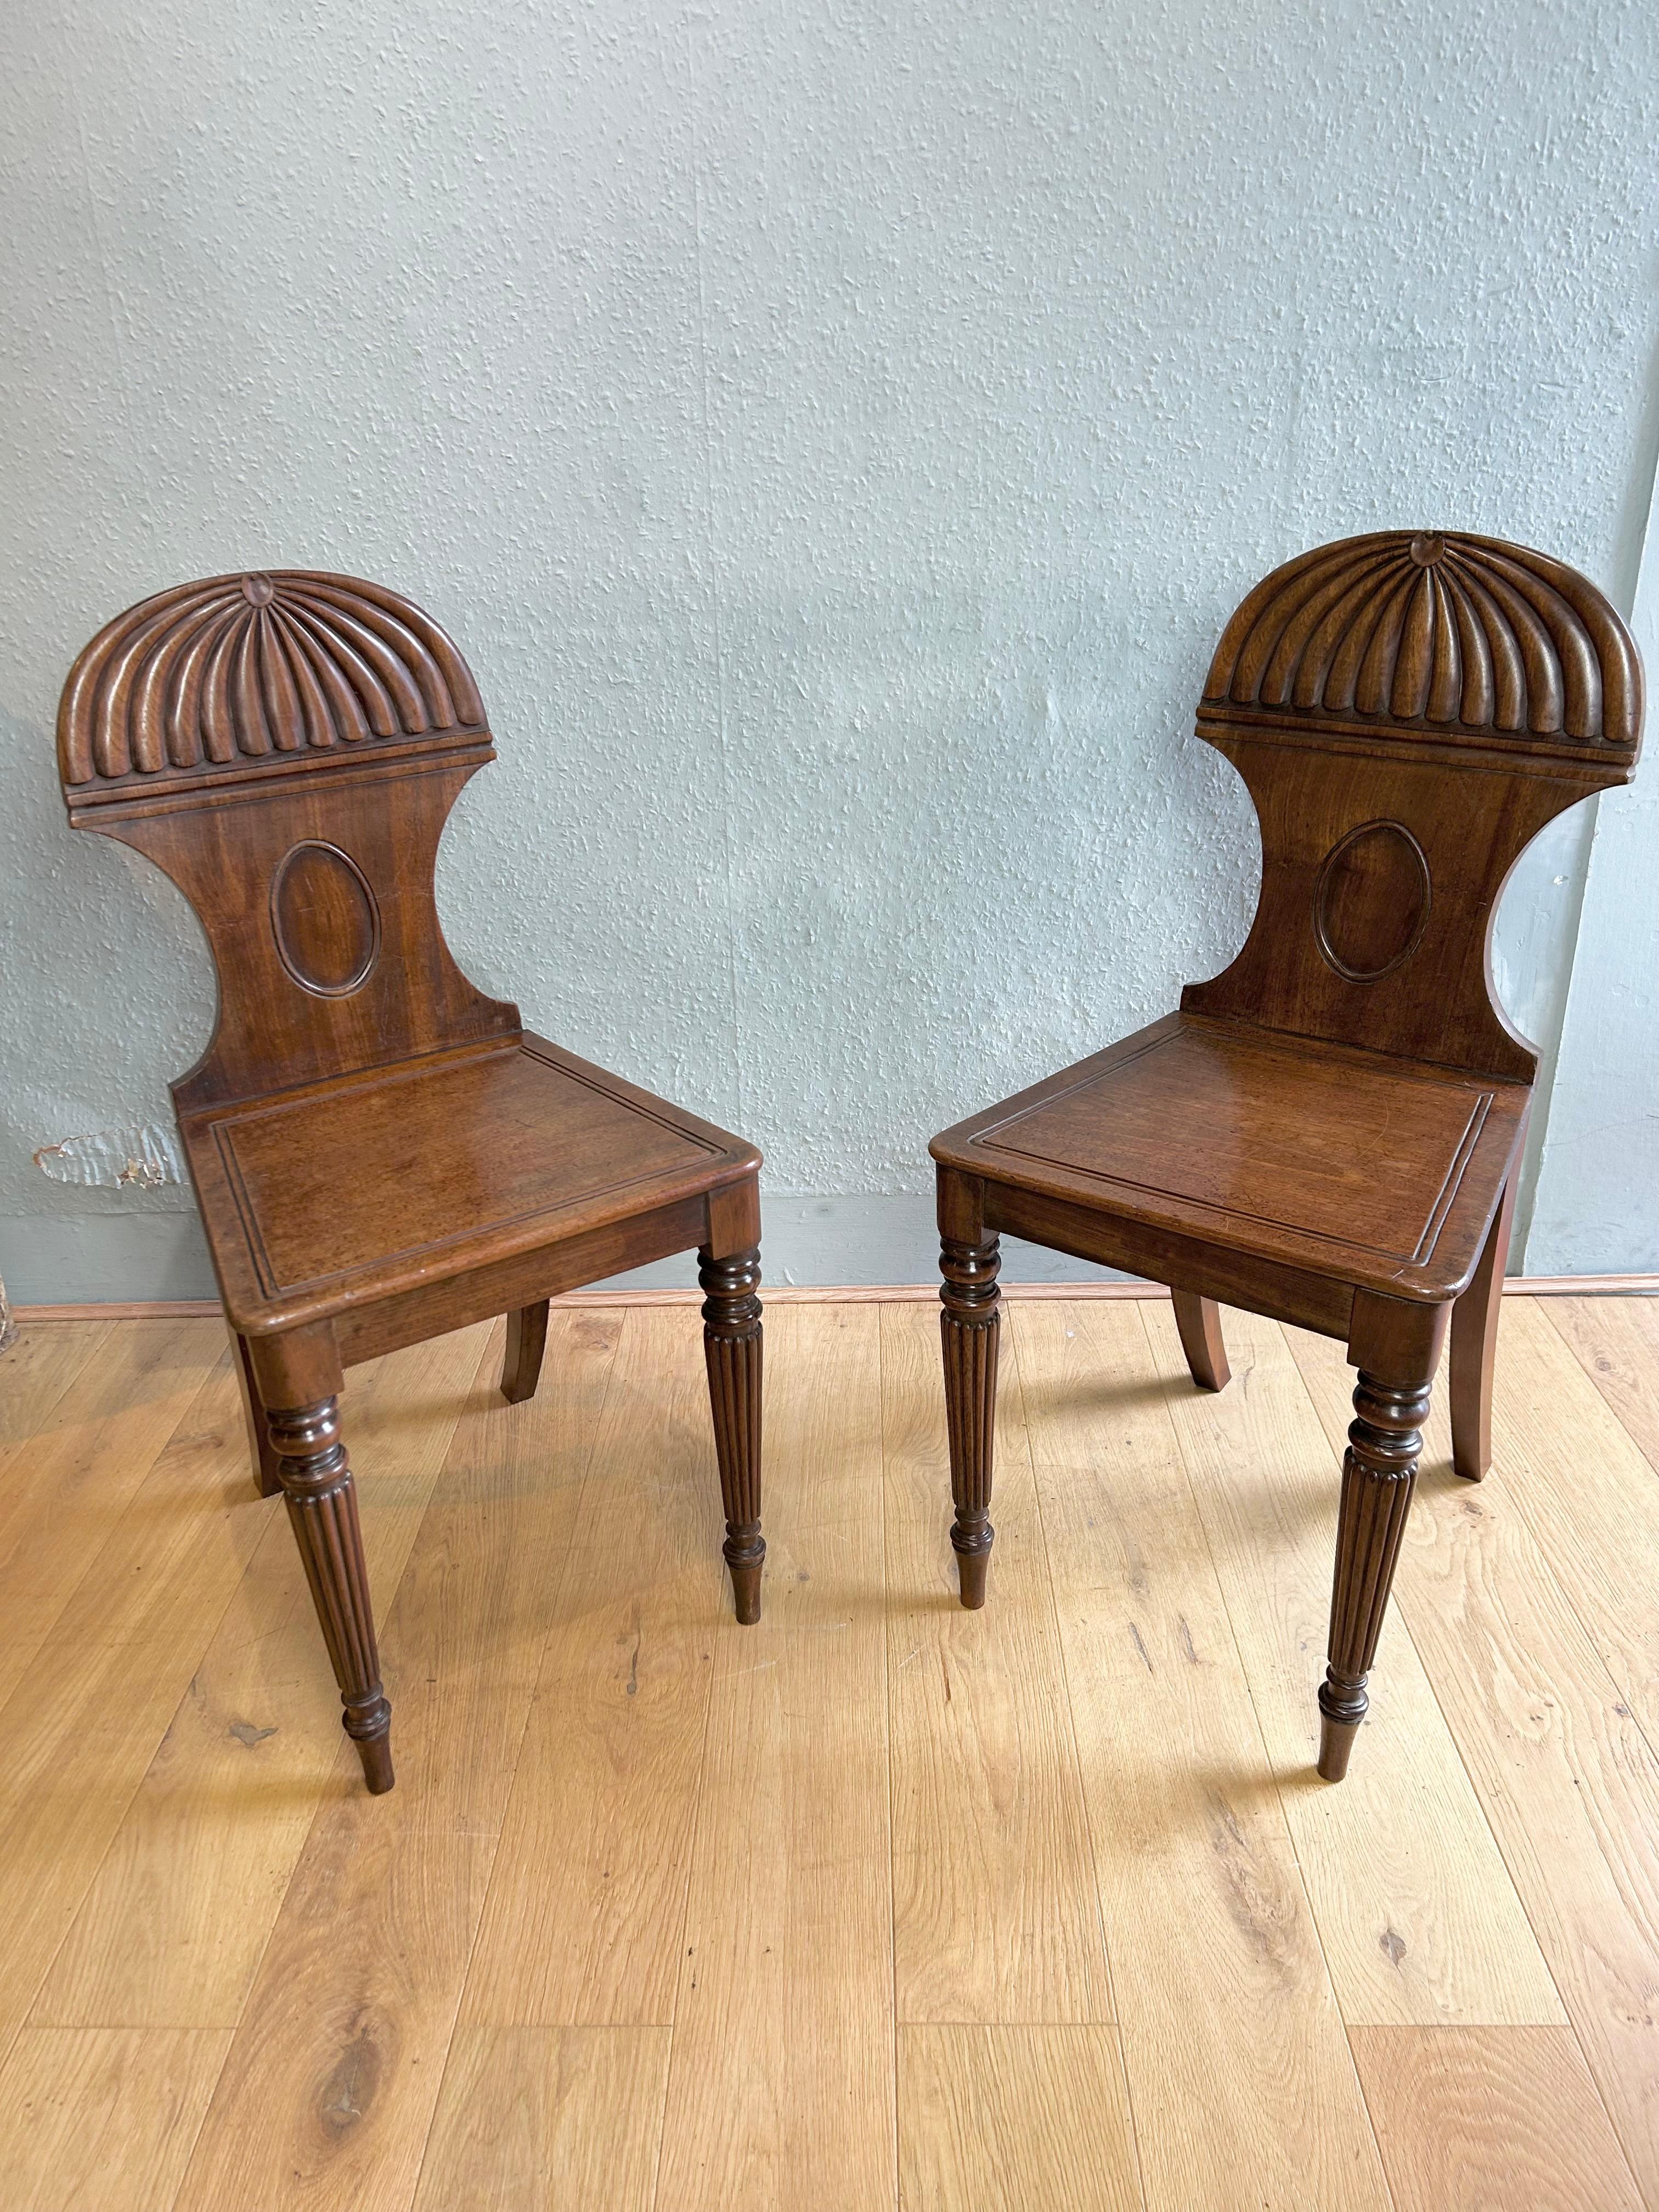 Paire de chaises d'entrée en acajou de style Régence, attribuées à Gillows of Lancaster and London vers 1815, avec un dais classique sculpté, une assise moulurée reposant sur de fins pieds tournés et cannelés typiques de Gillows. Les chaises